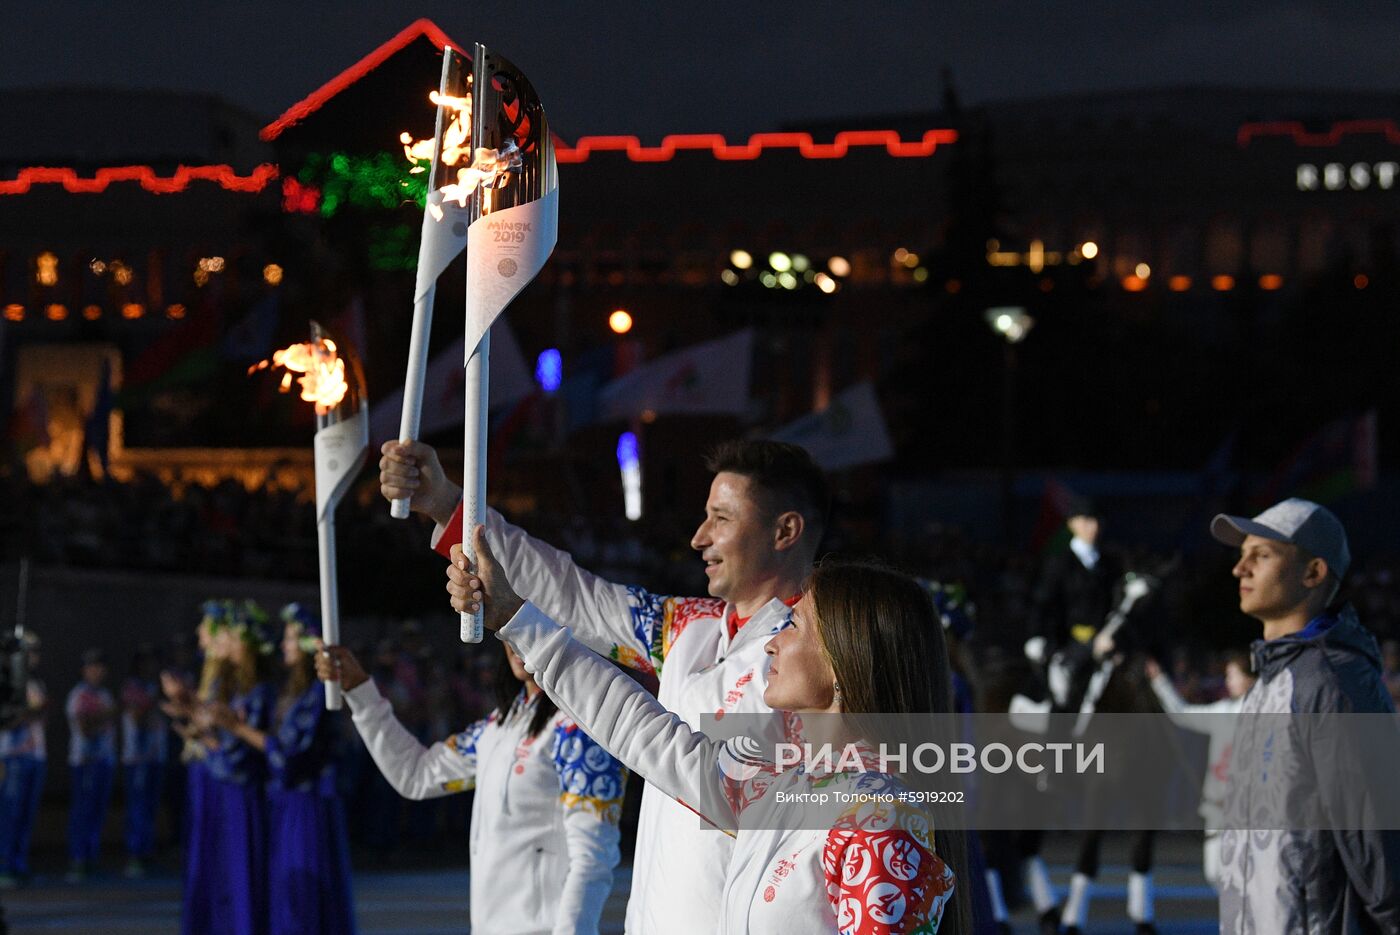 Эстафета "Пламя мира" II Европейских игр прибыла в Минск